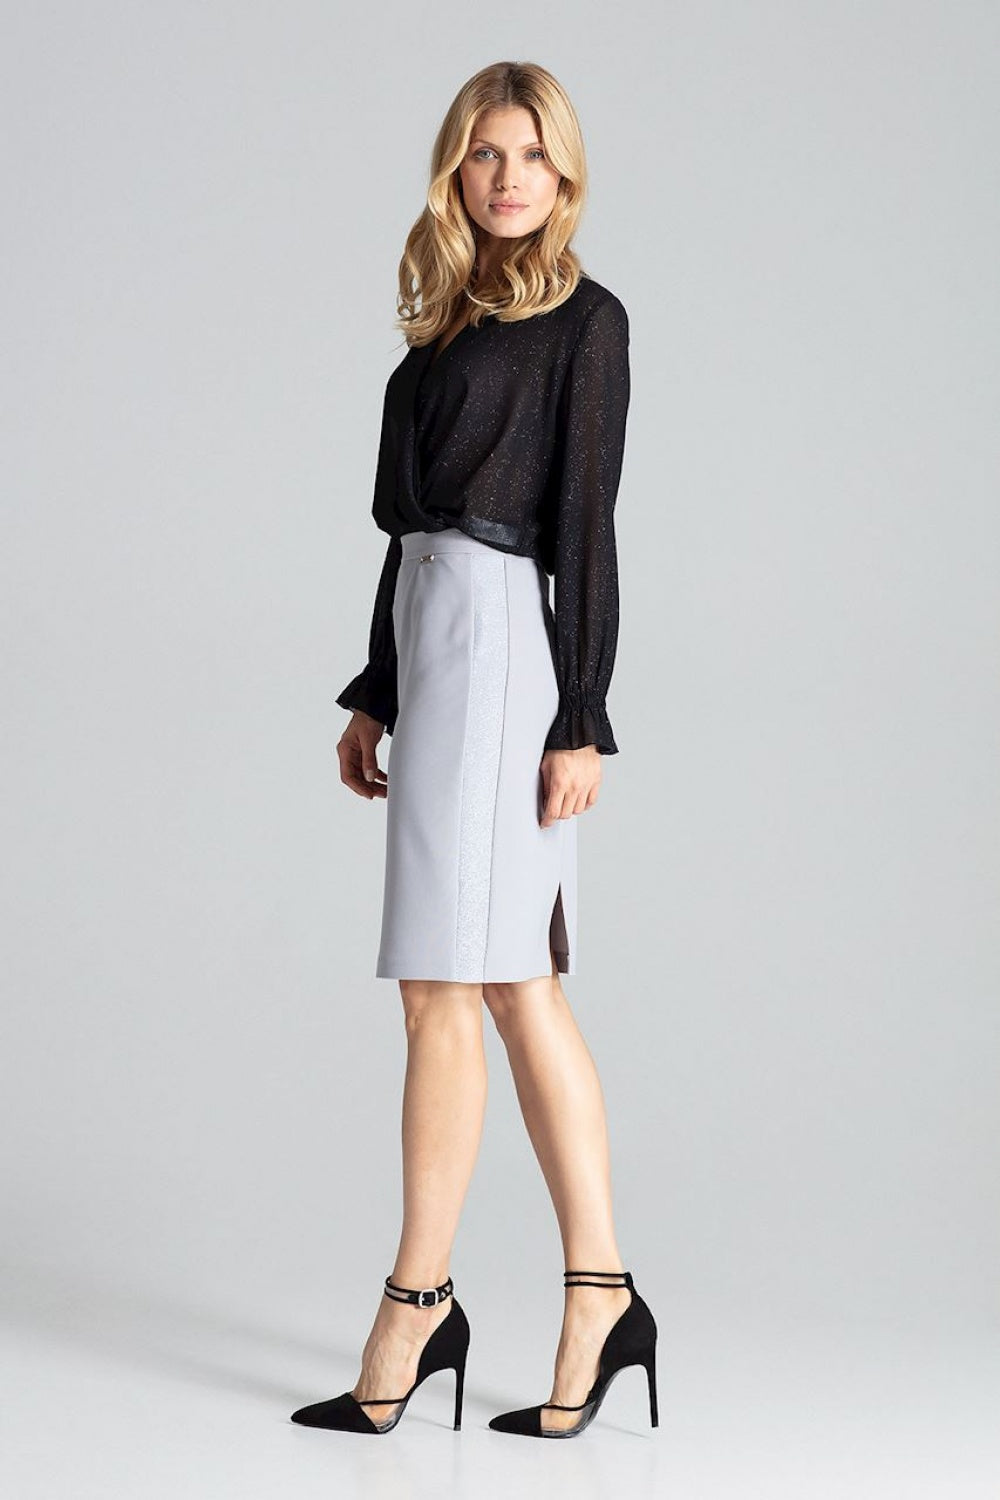 Skirt model 138288 Elsy Style Skirts